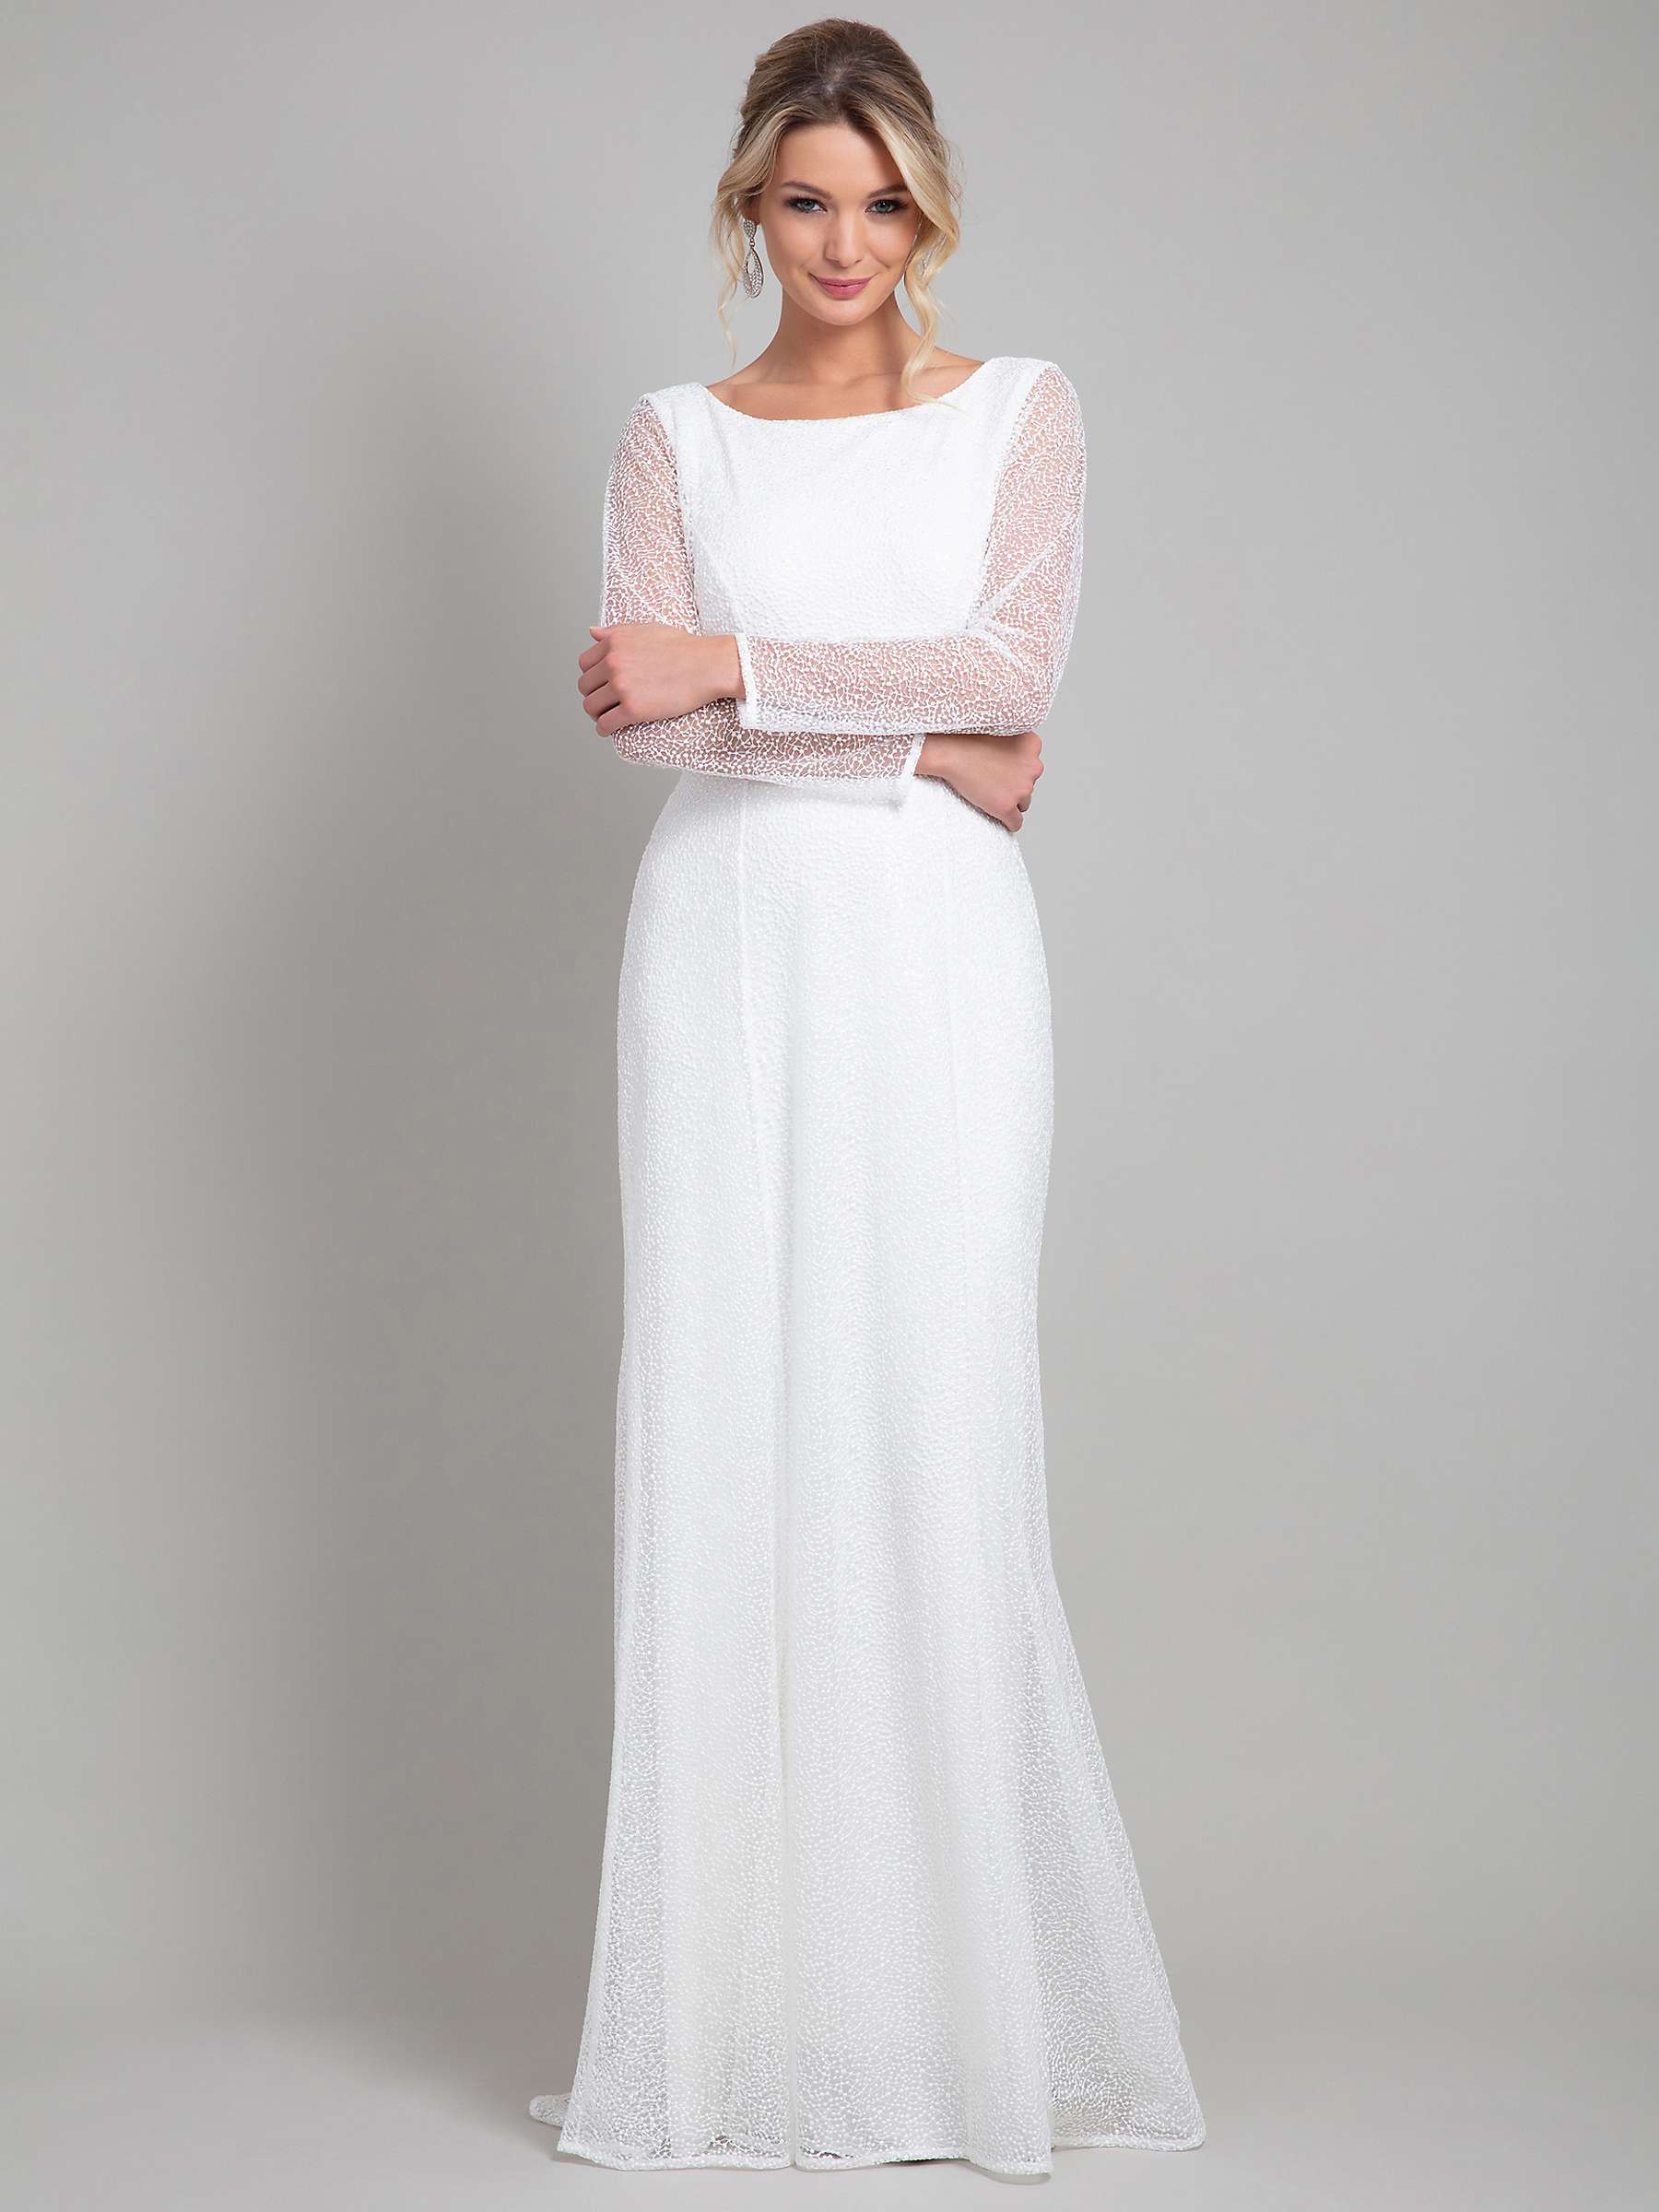 Alie Street Iris Sparkle Wedding Gown, White at John Lewis & Partners